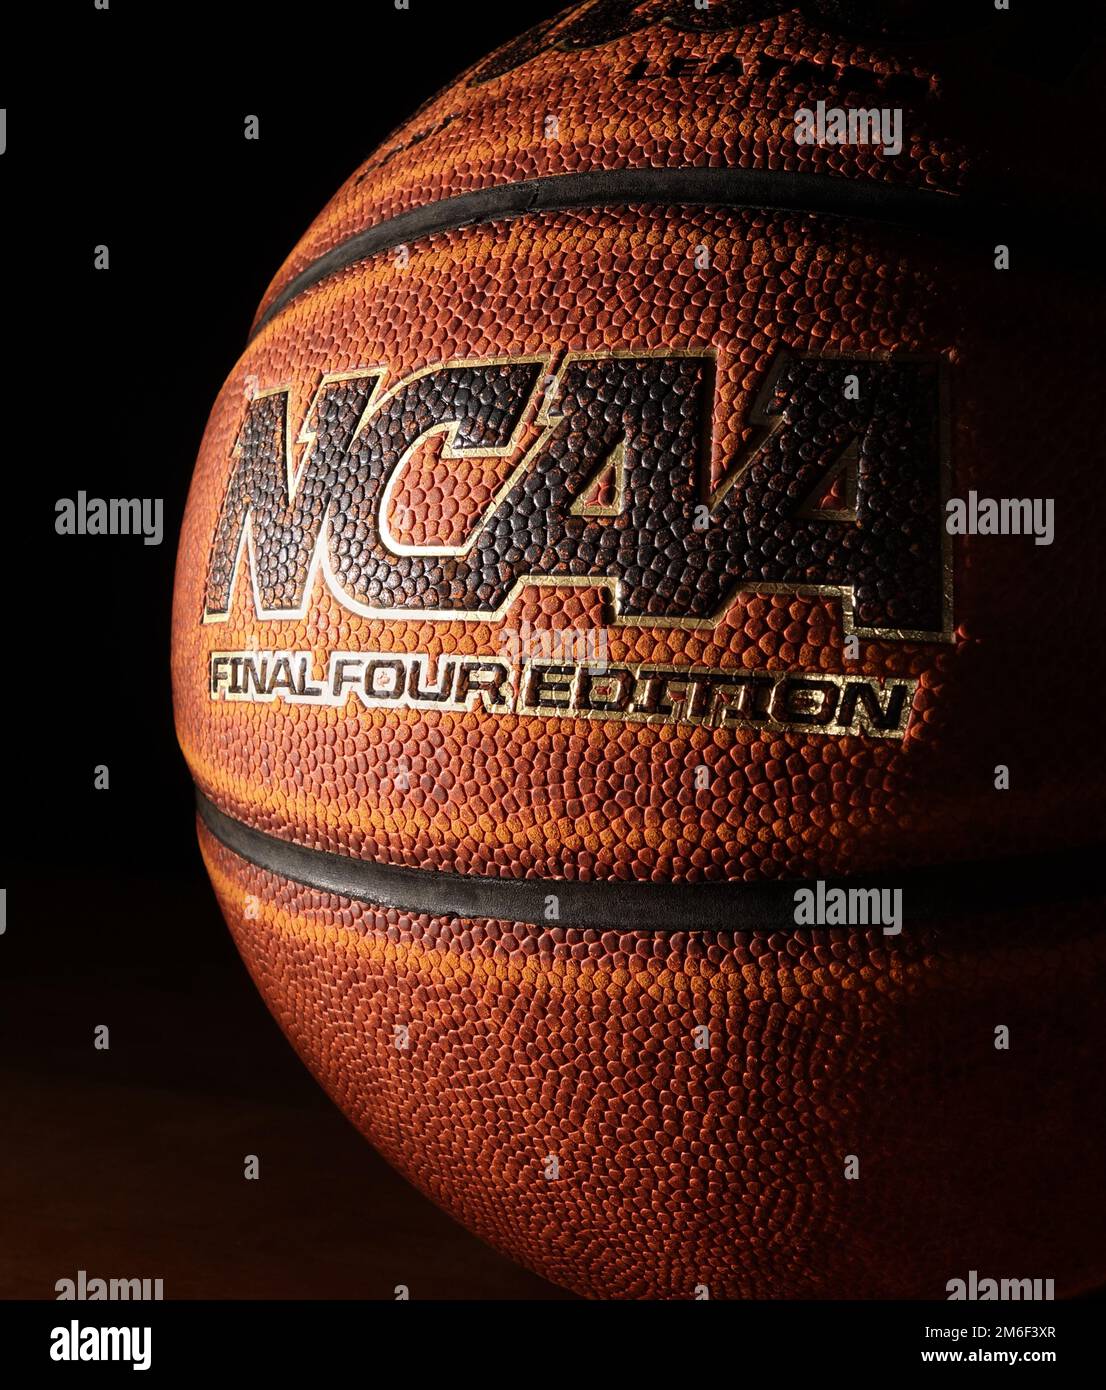 RALEIGH,NC/USA - 12-13-2018: Une édition finale de basket-ball NCAA sur bois dur Banque D'Images